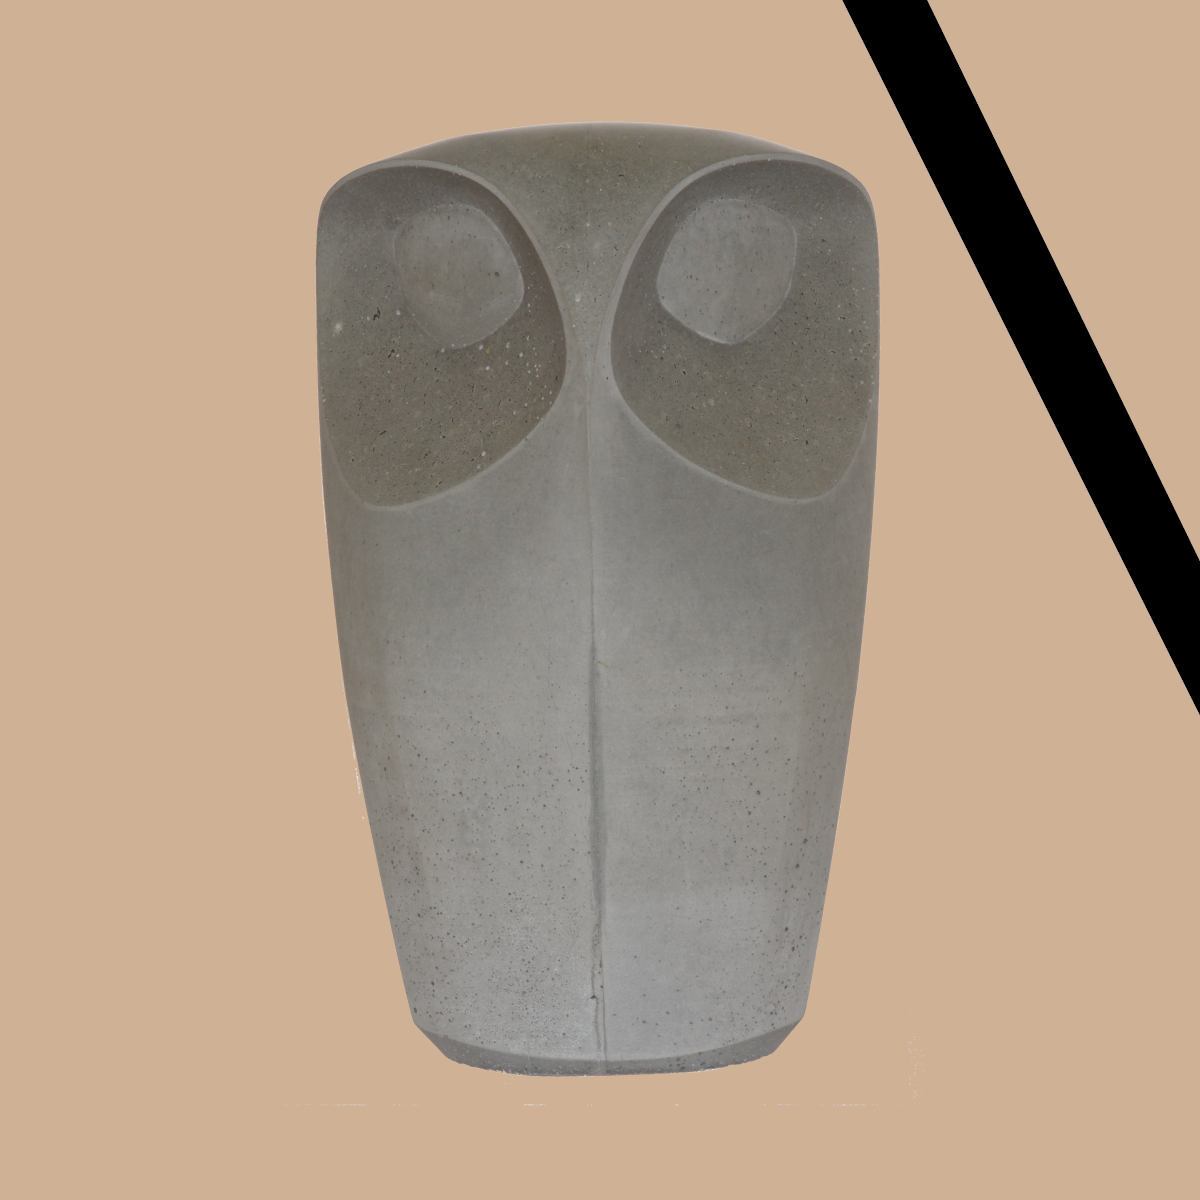 IN MEMORIAM: Concrete Owl Sculpture by Chris B.